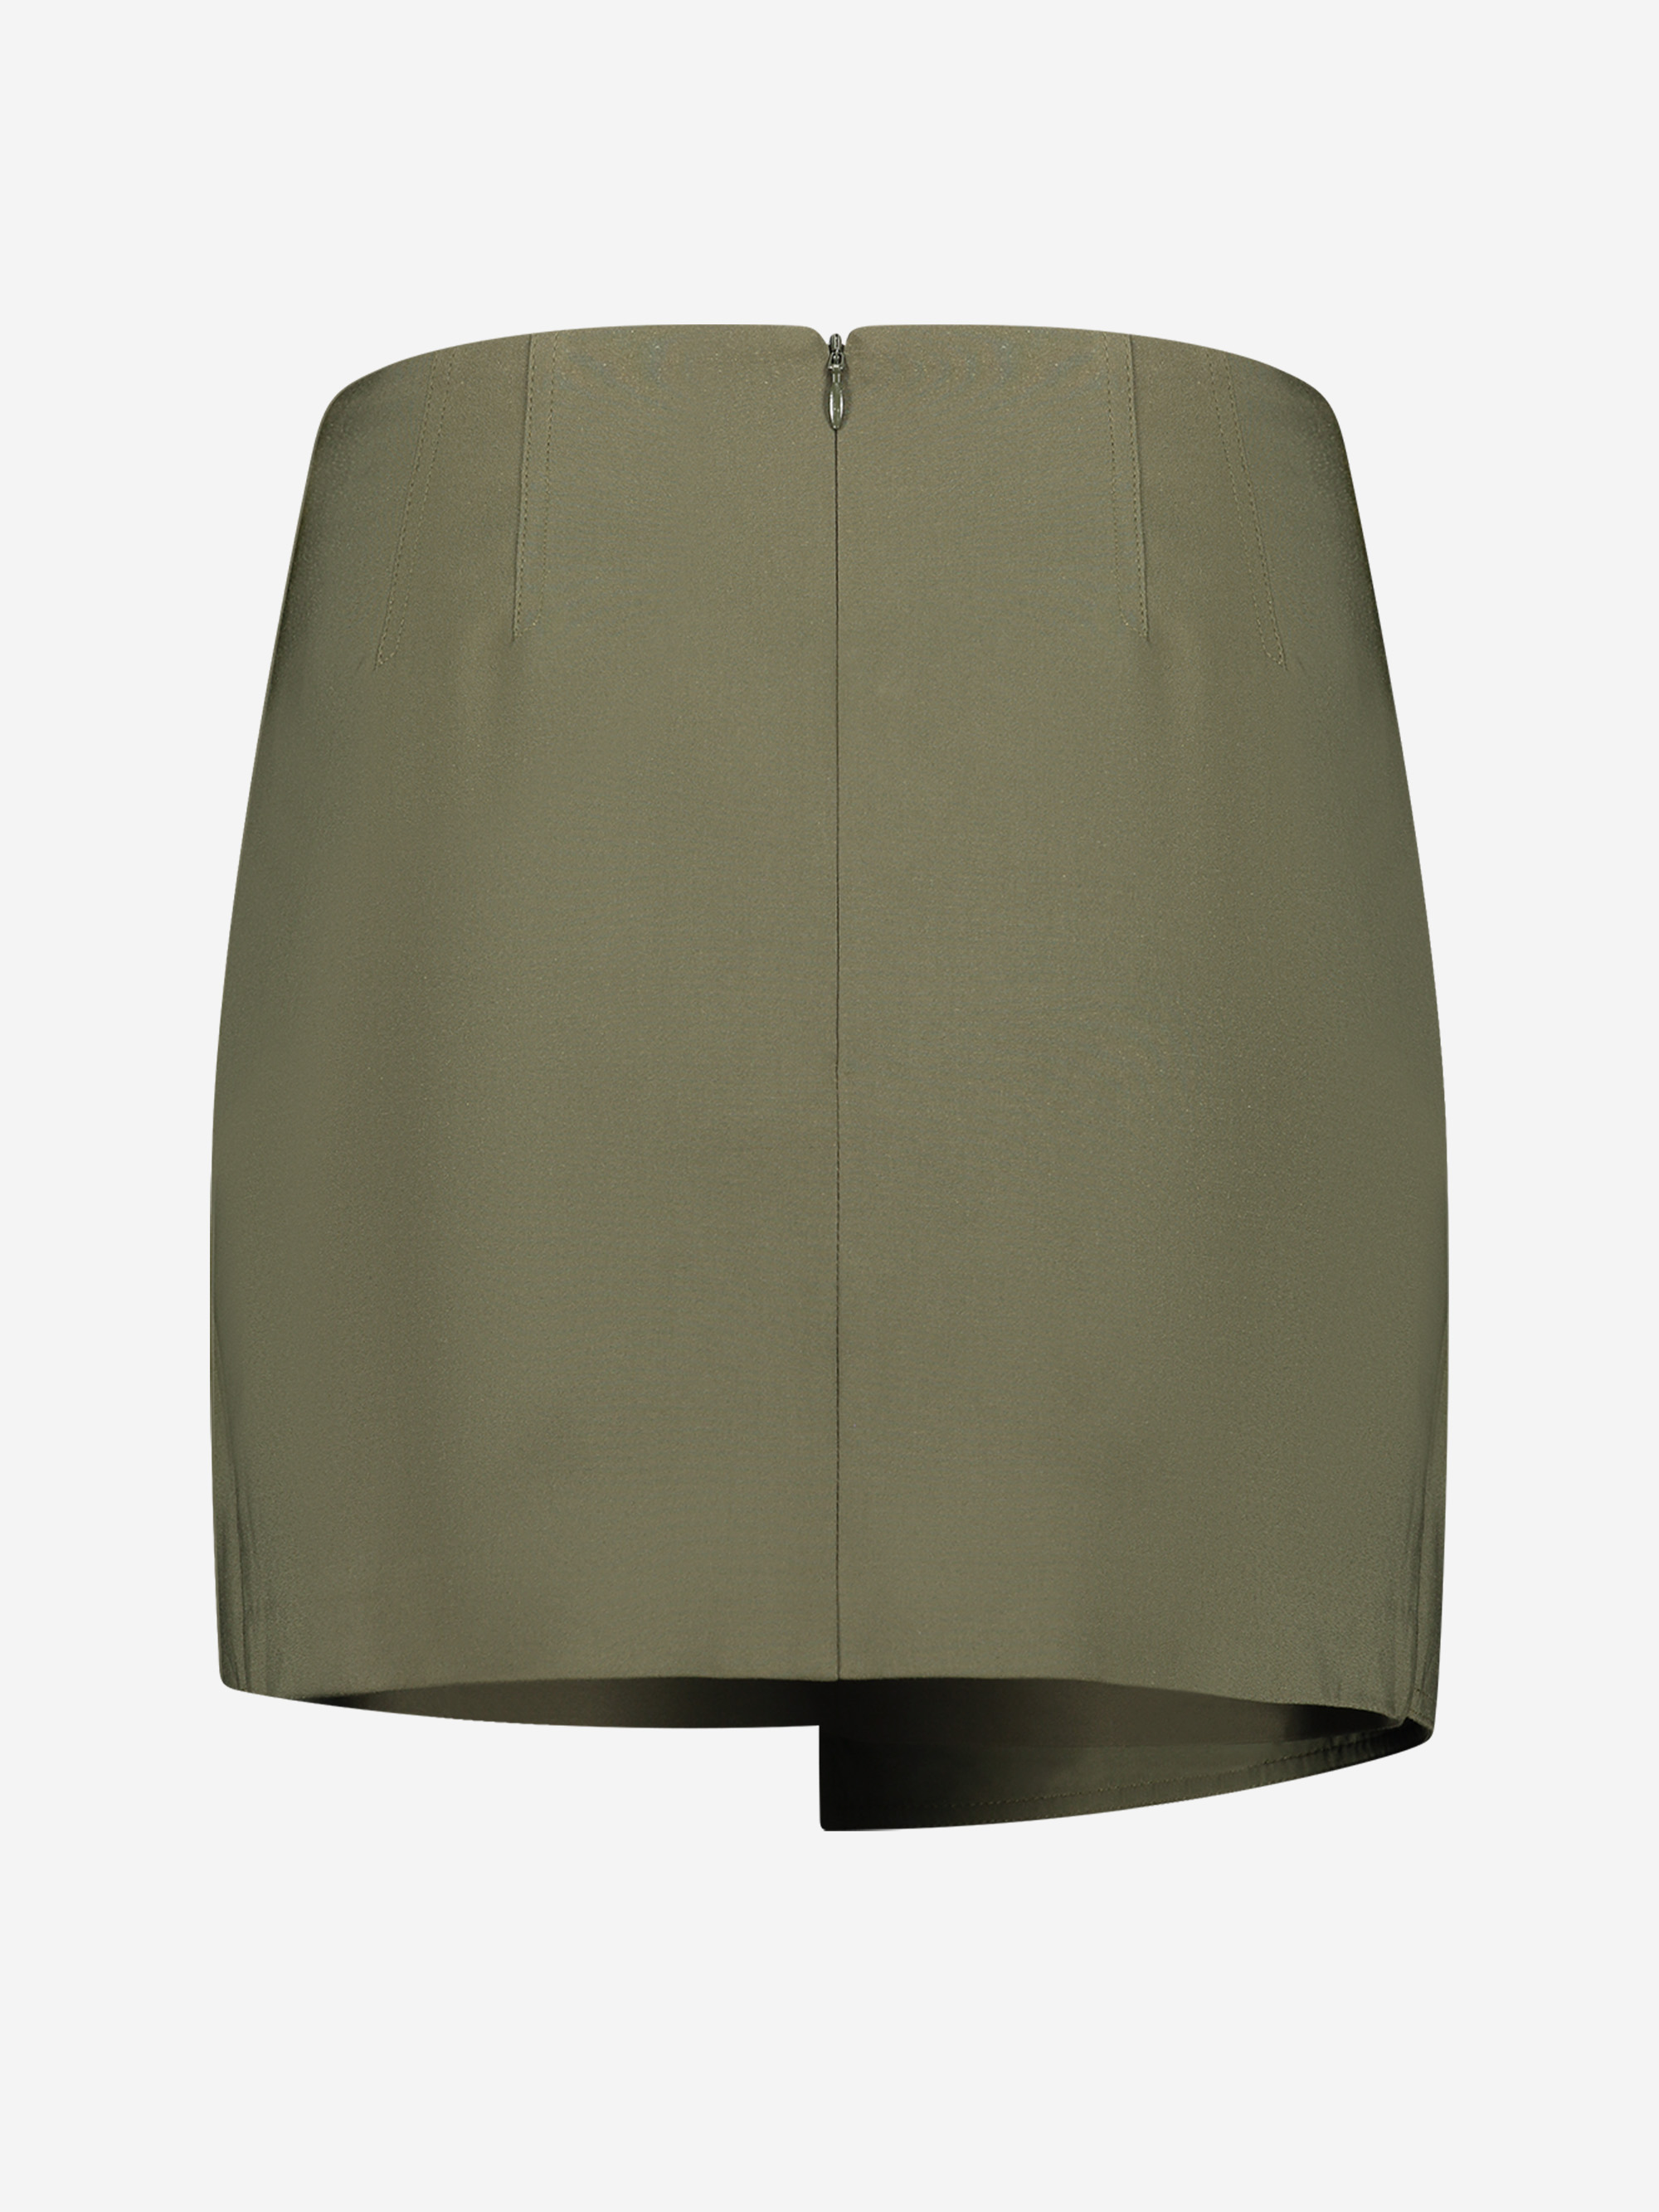 Auckland Skirt